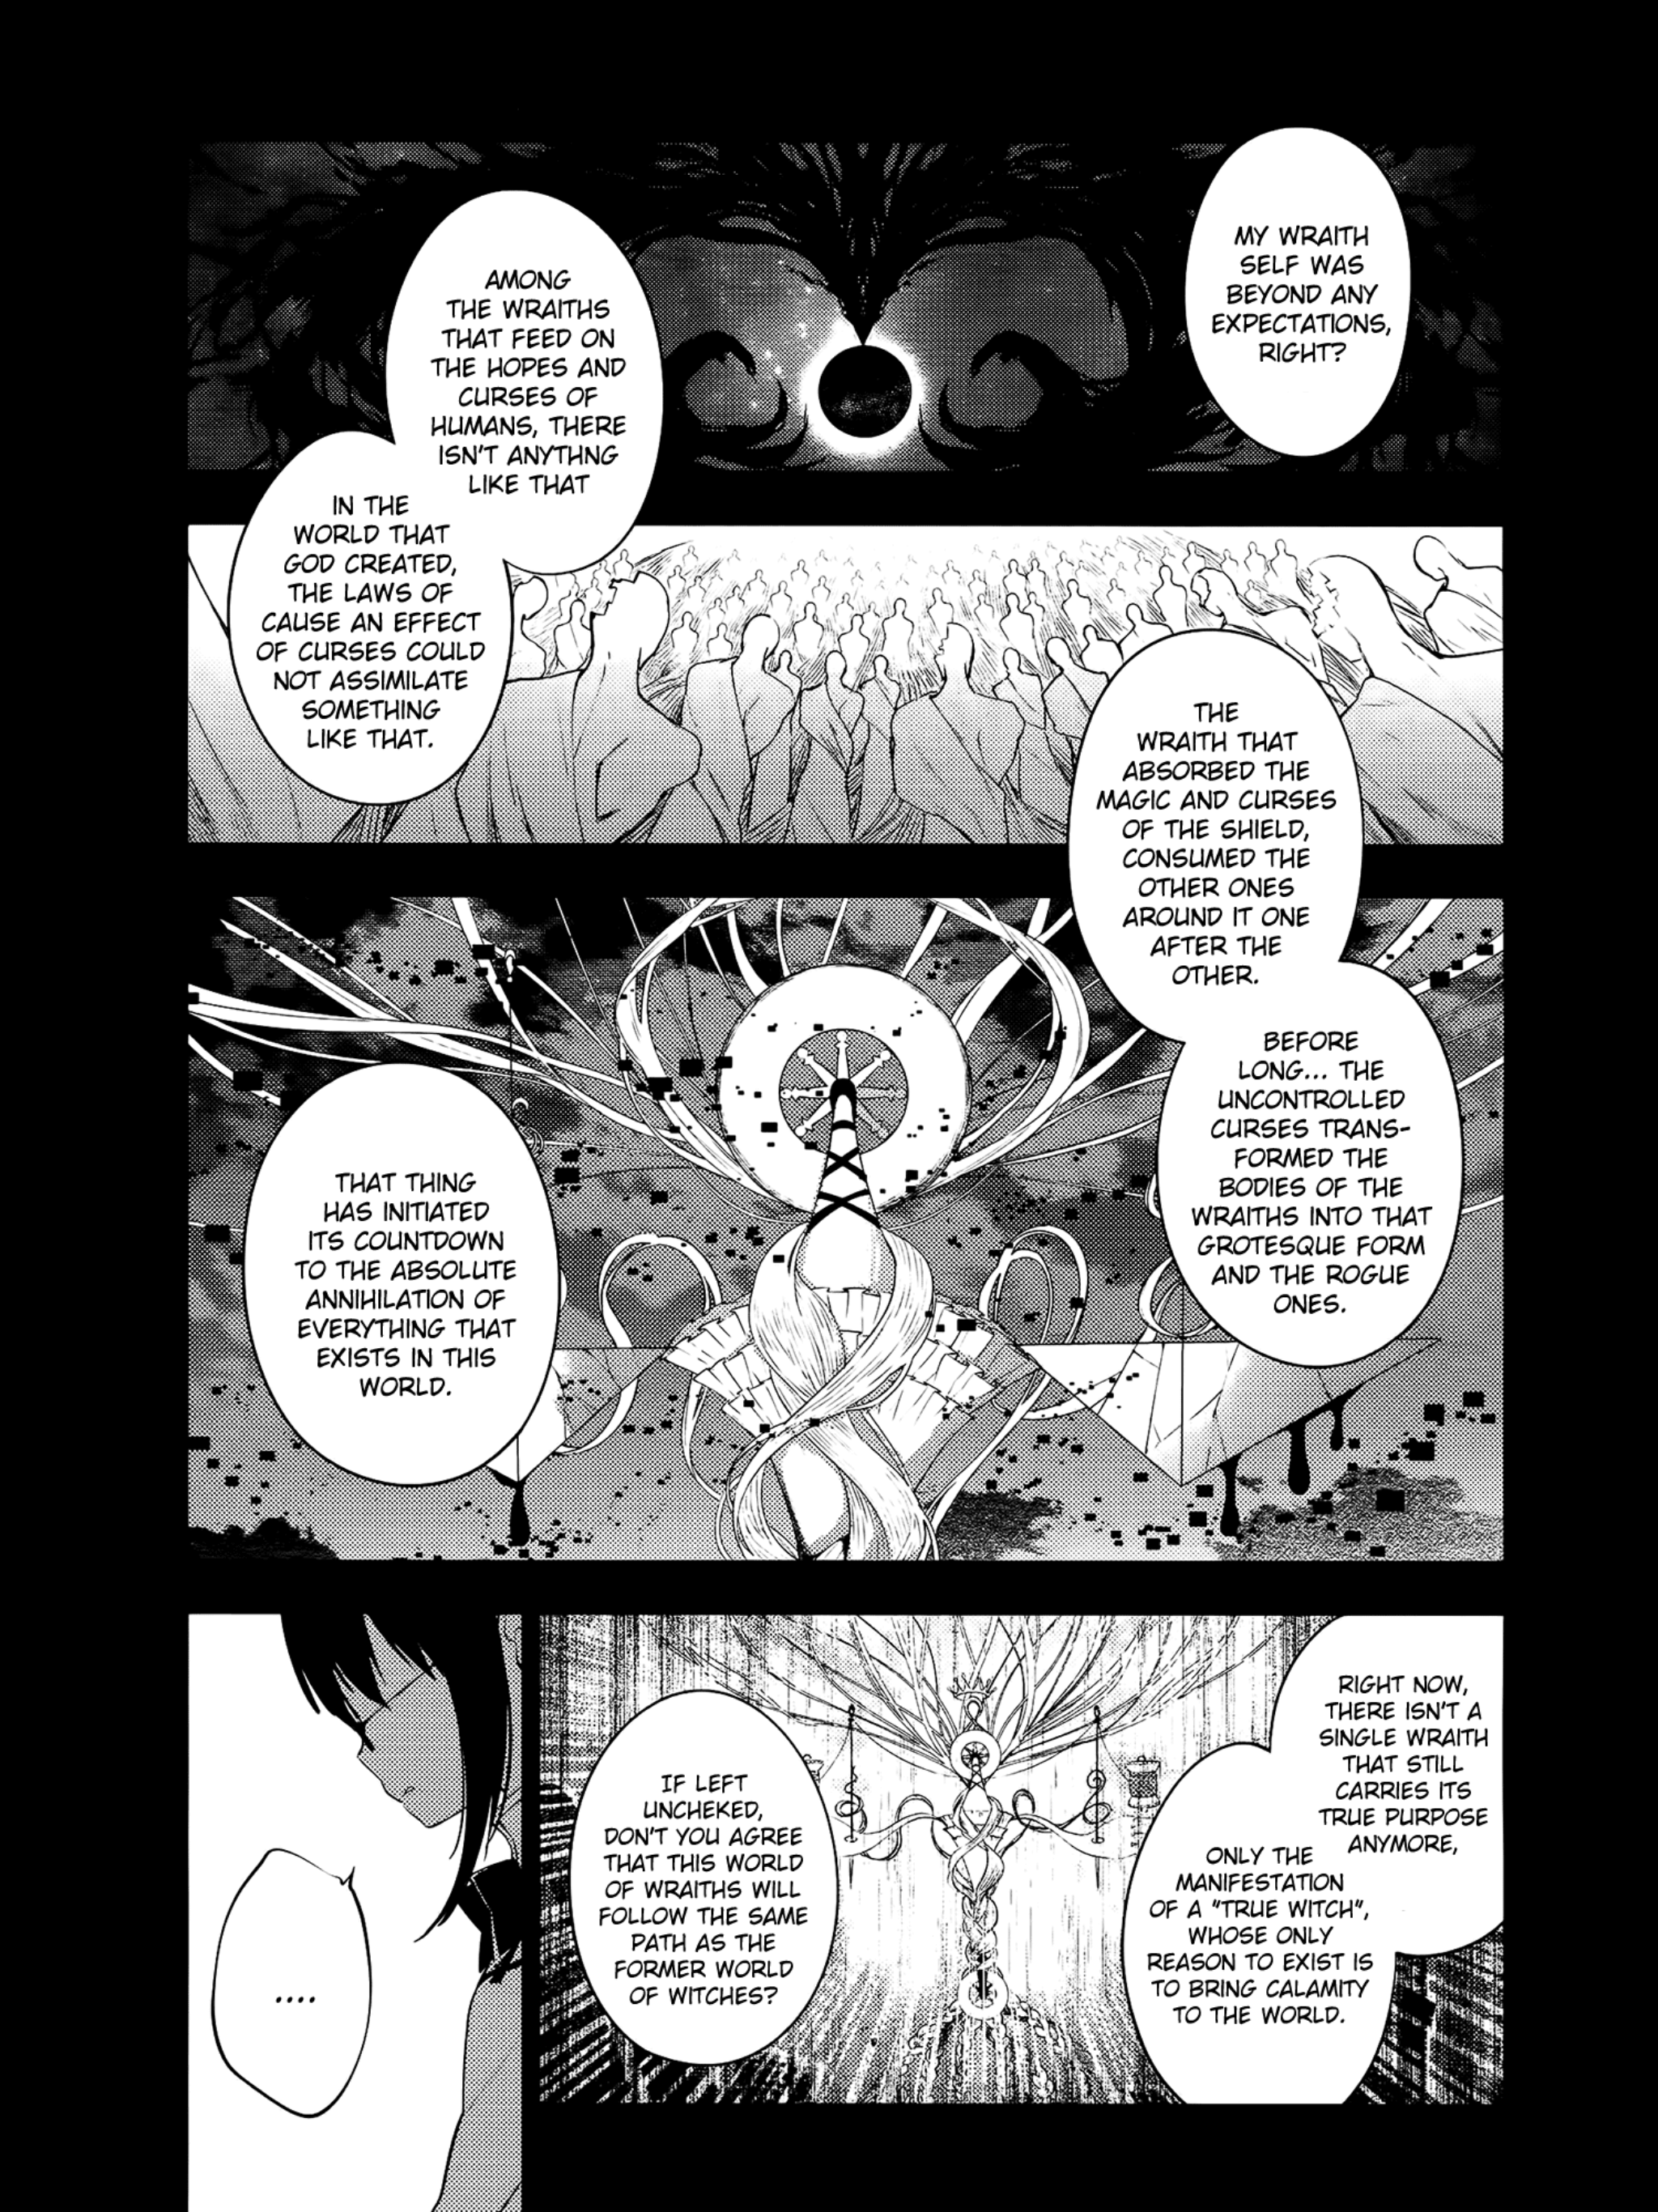 Manga panel ( Mui magic ) by Piroumistruepogg on DeviantArt